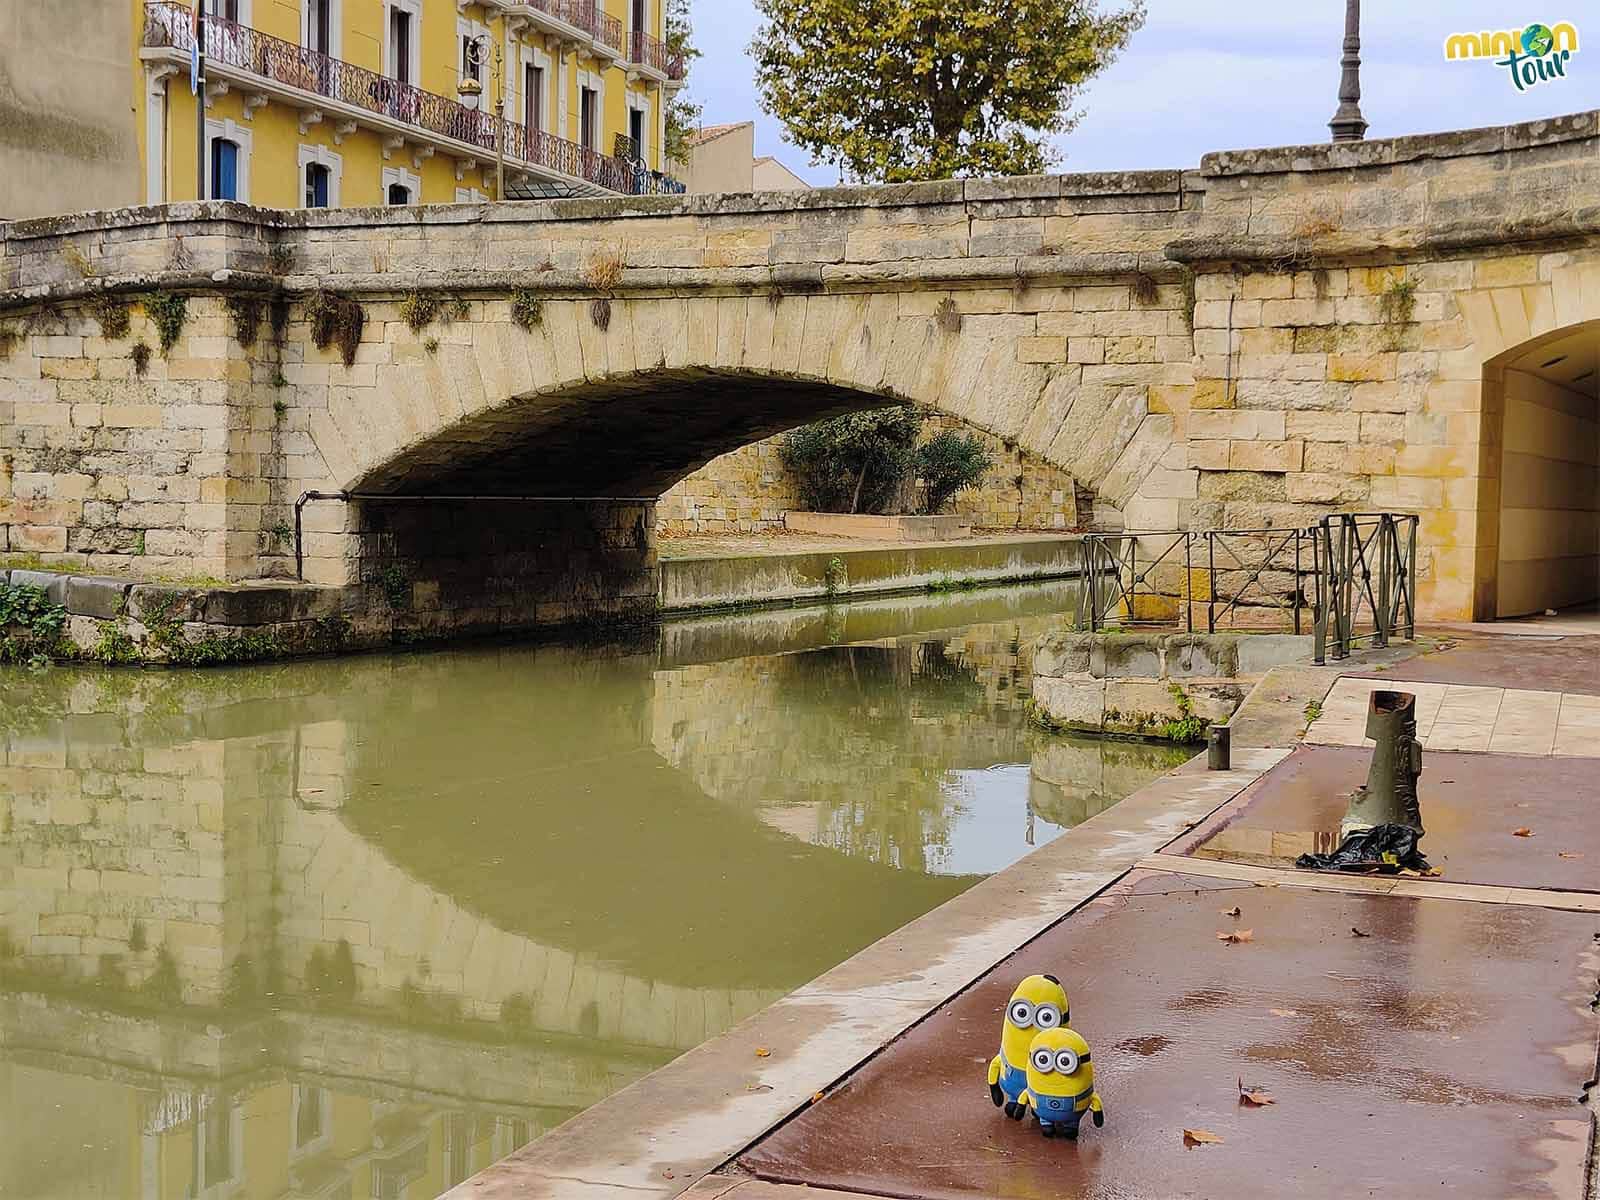 Otro de los puentes chulos que puedes ver en Narbona es el Puente Voltaire